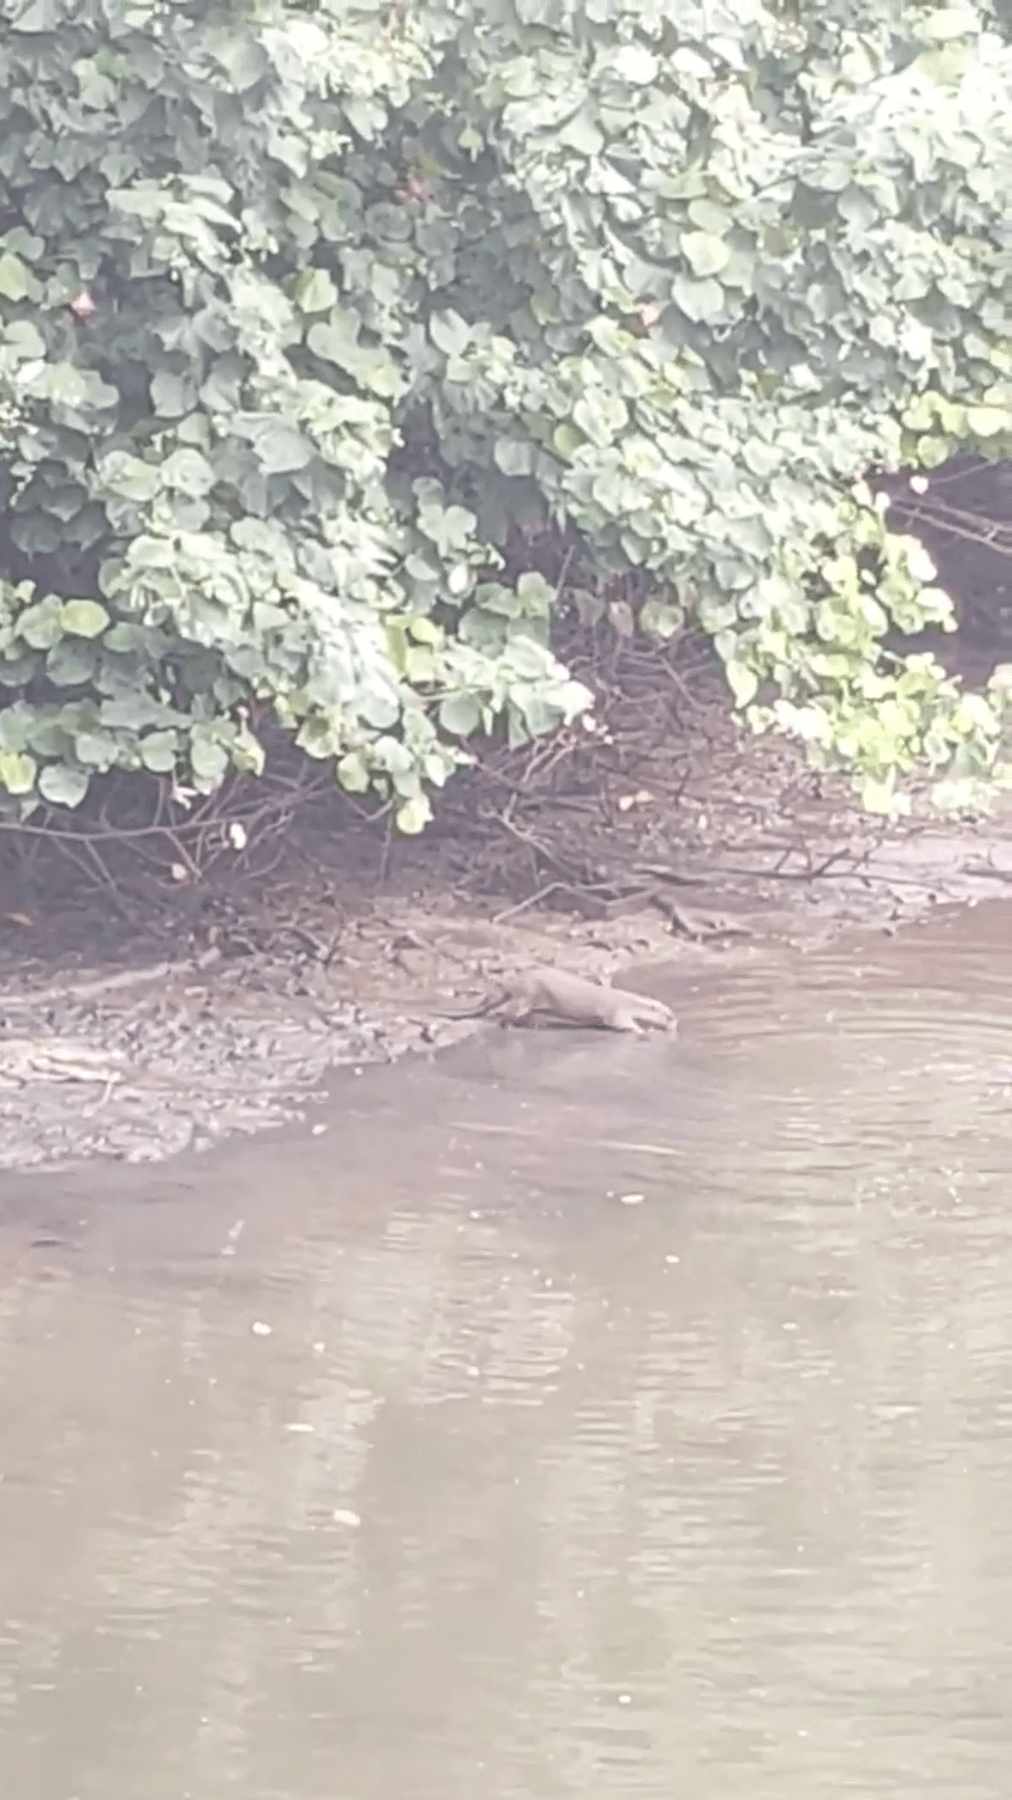 otters resting croc